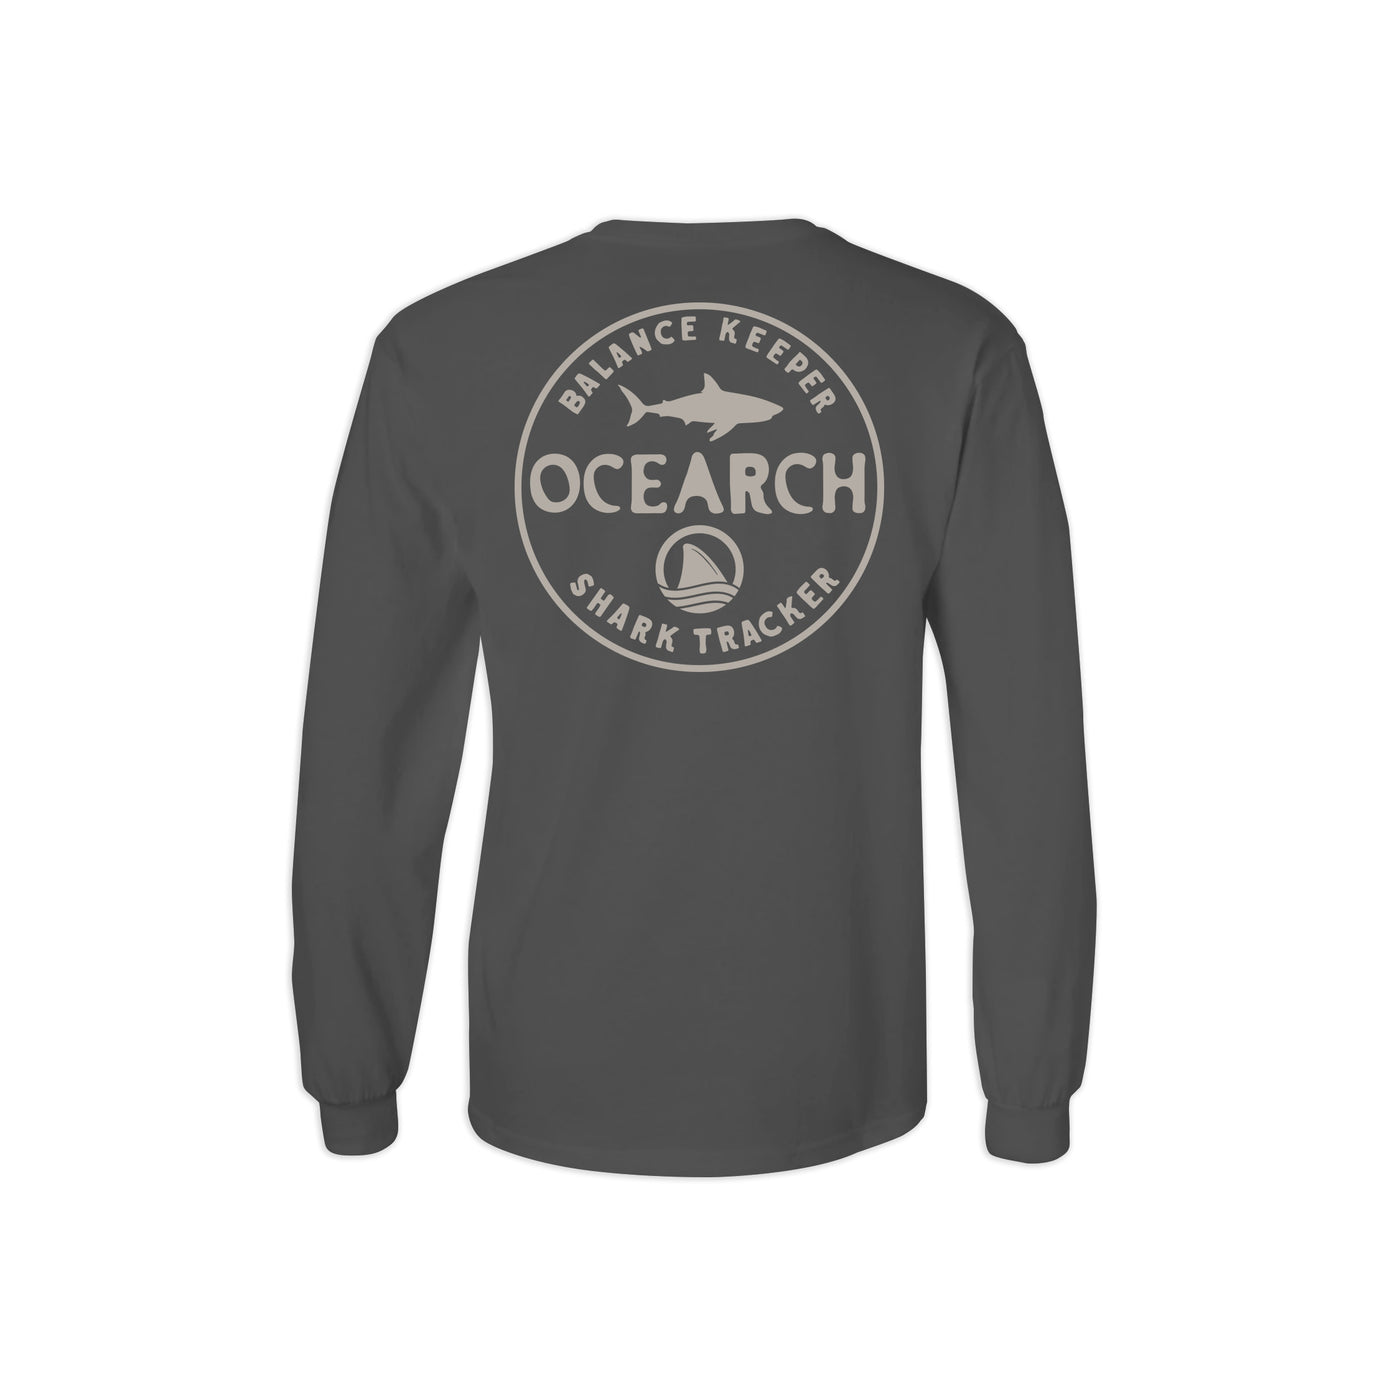 Balance Keeper Long Sleeve Shirt | Official OCEARCH Store